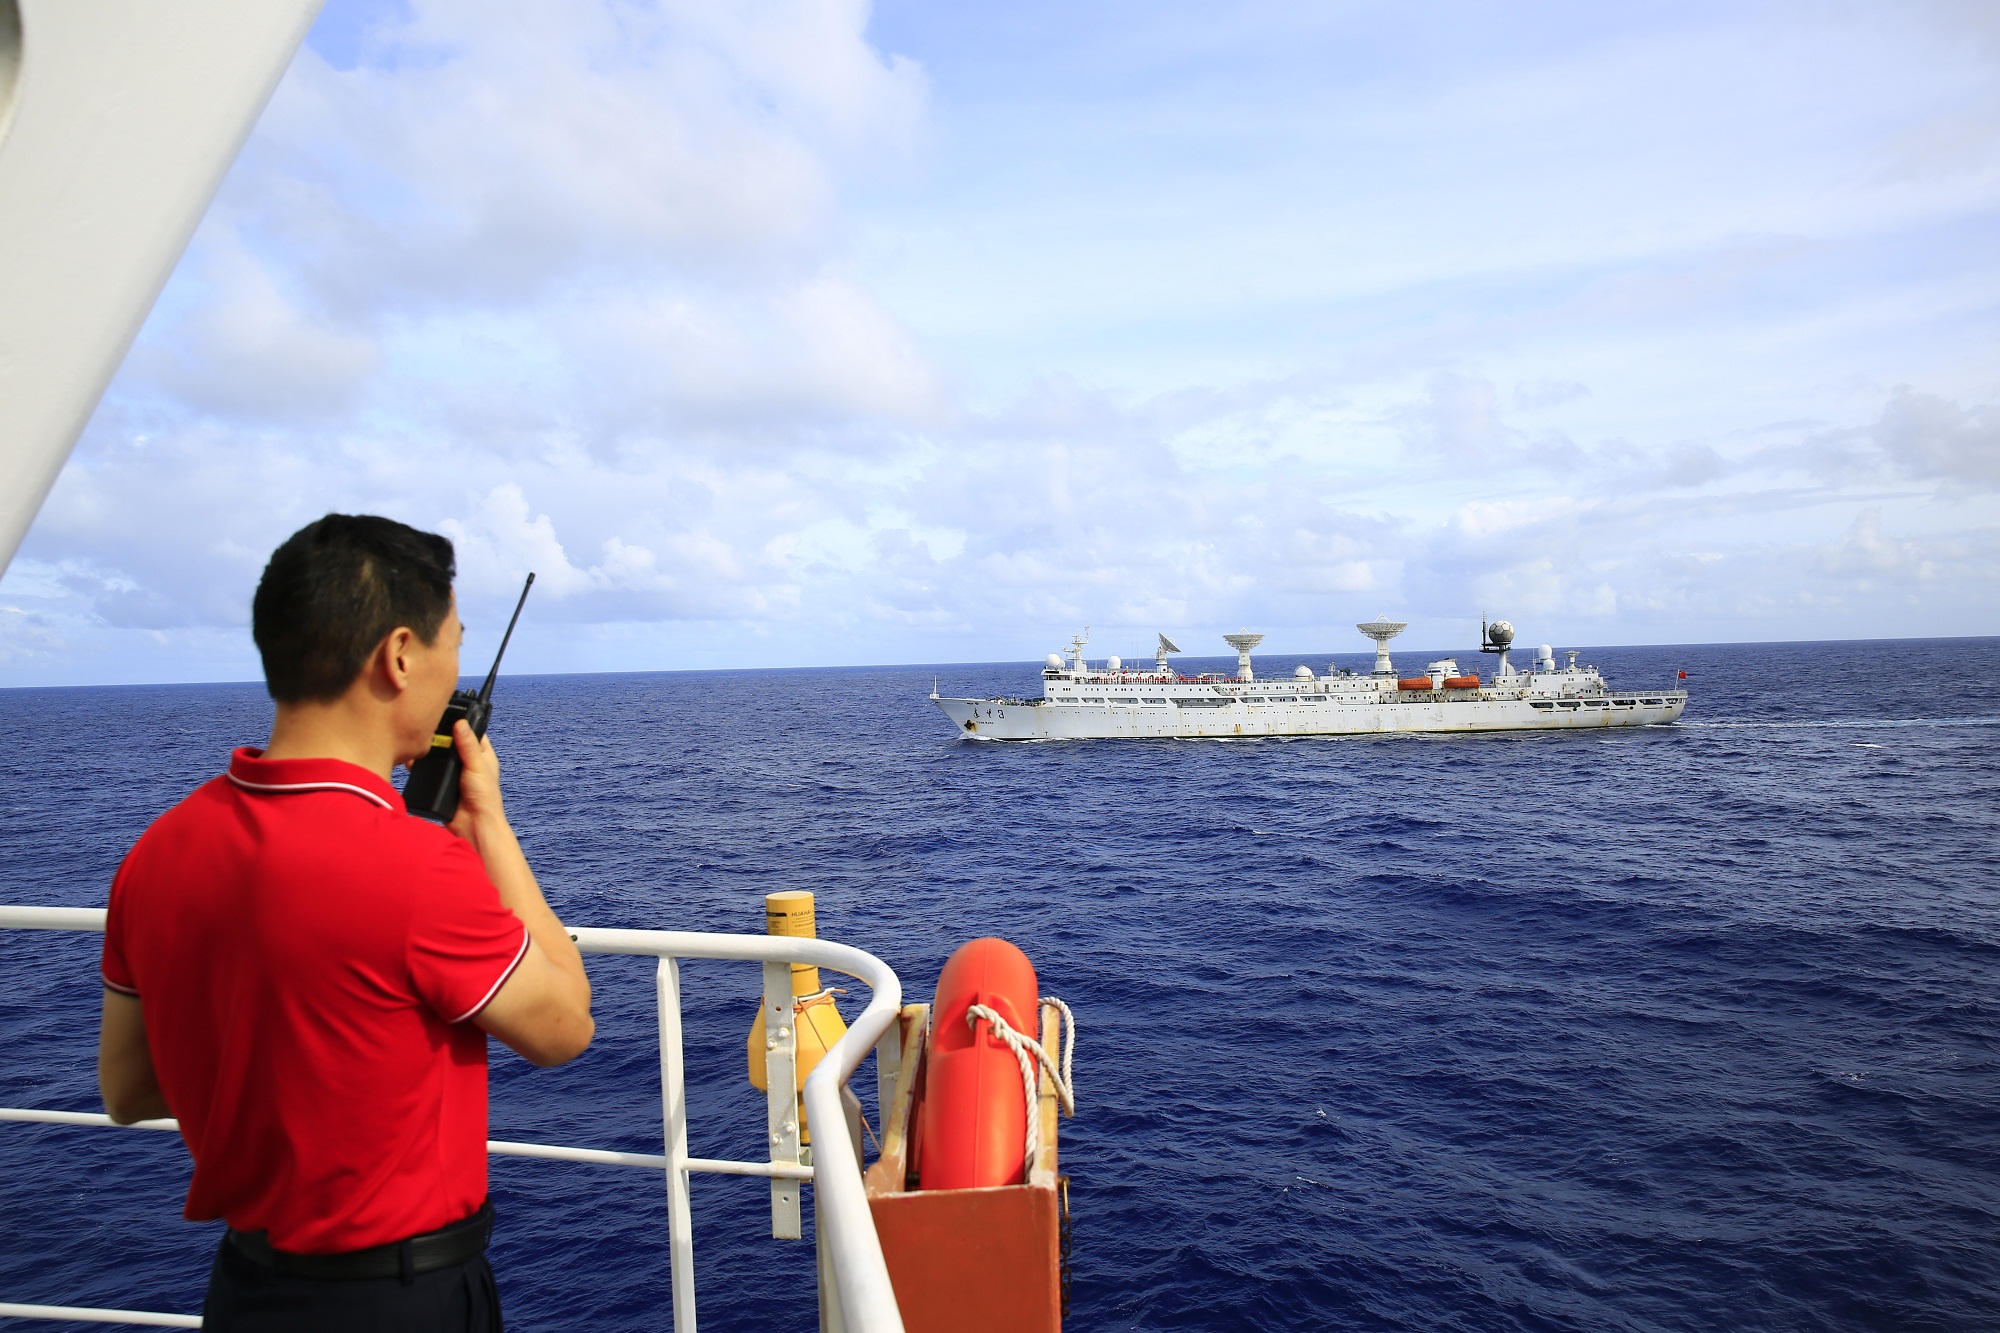 远望7号船船长倪留国通过对讲机与对面沟通，韩帅摄.JPG